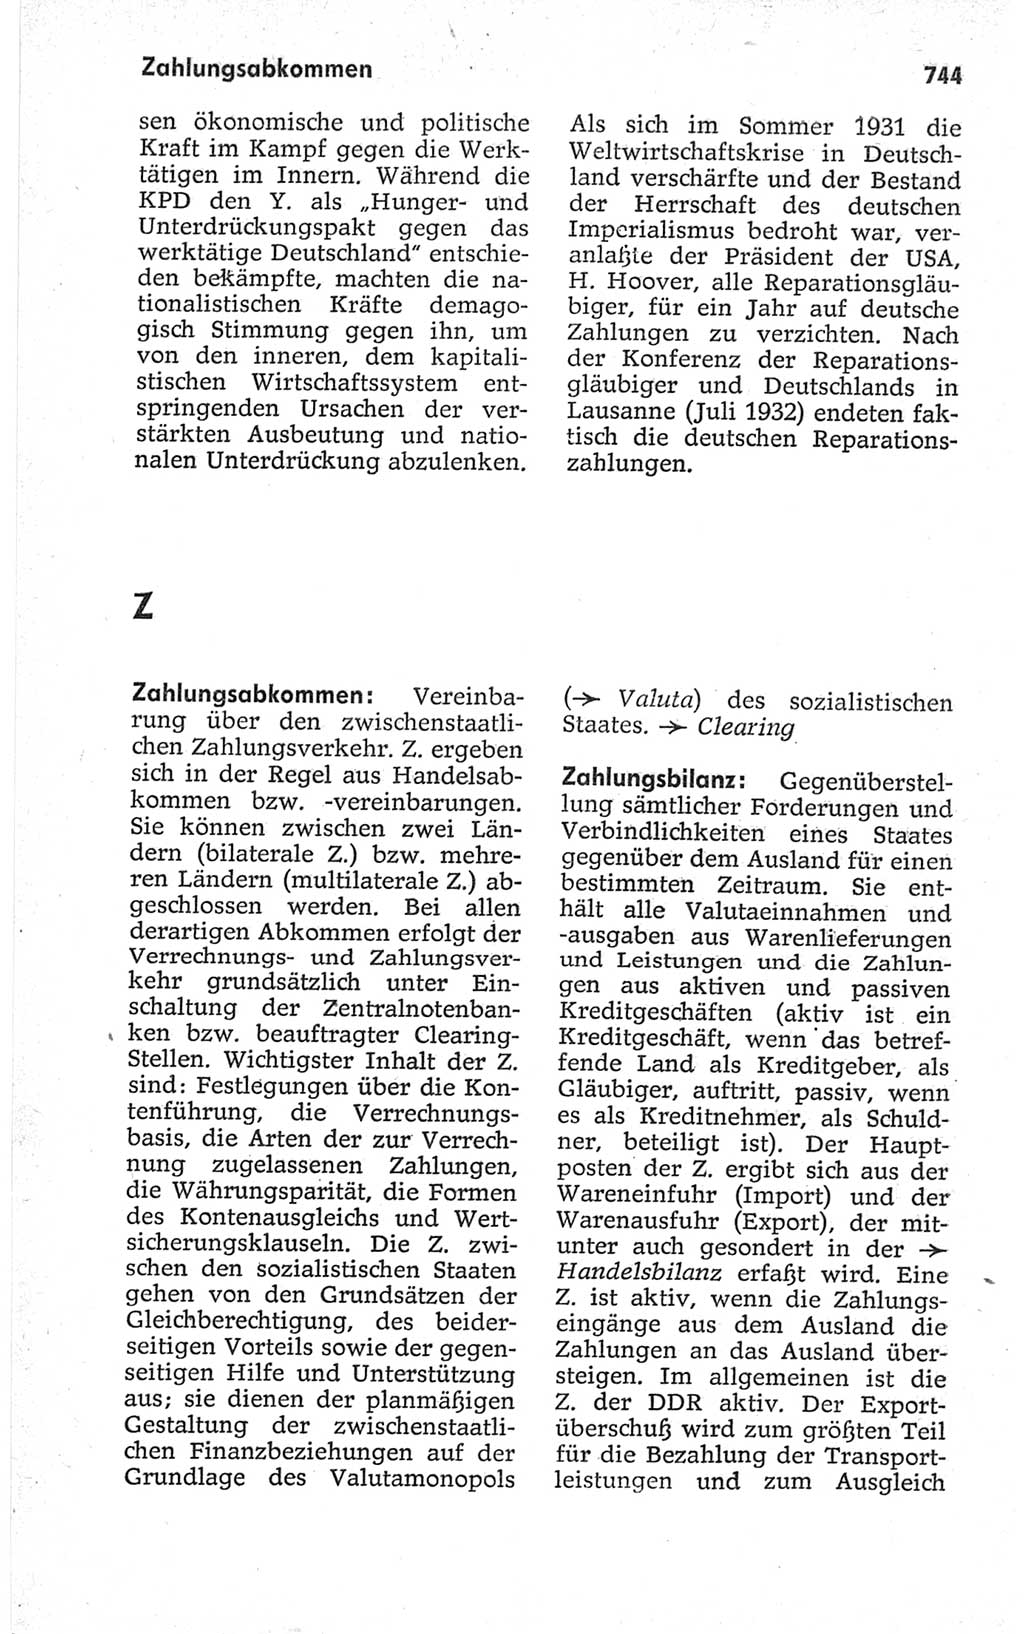 Kleines politisches Wörterbuch [Deutsche Demokratische Republik (DDR)] 1967, Seite 744 (Kl. pol. Wb. DDR 1967, S. 744)